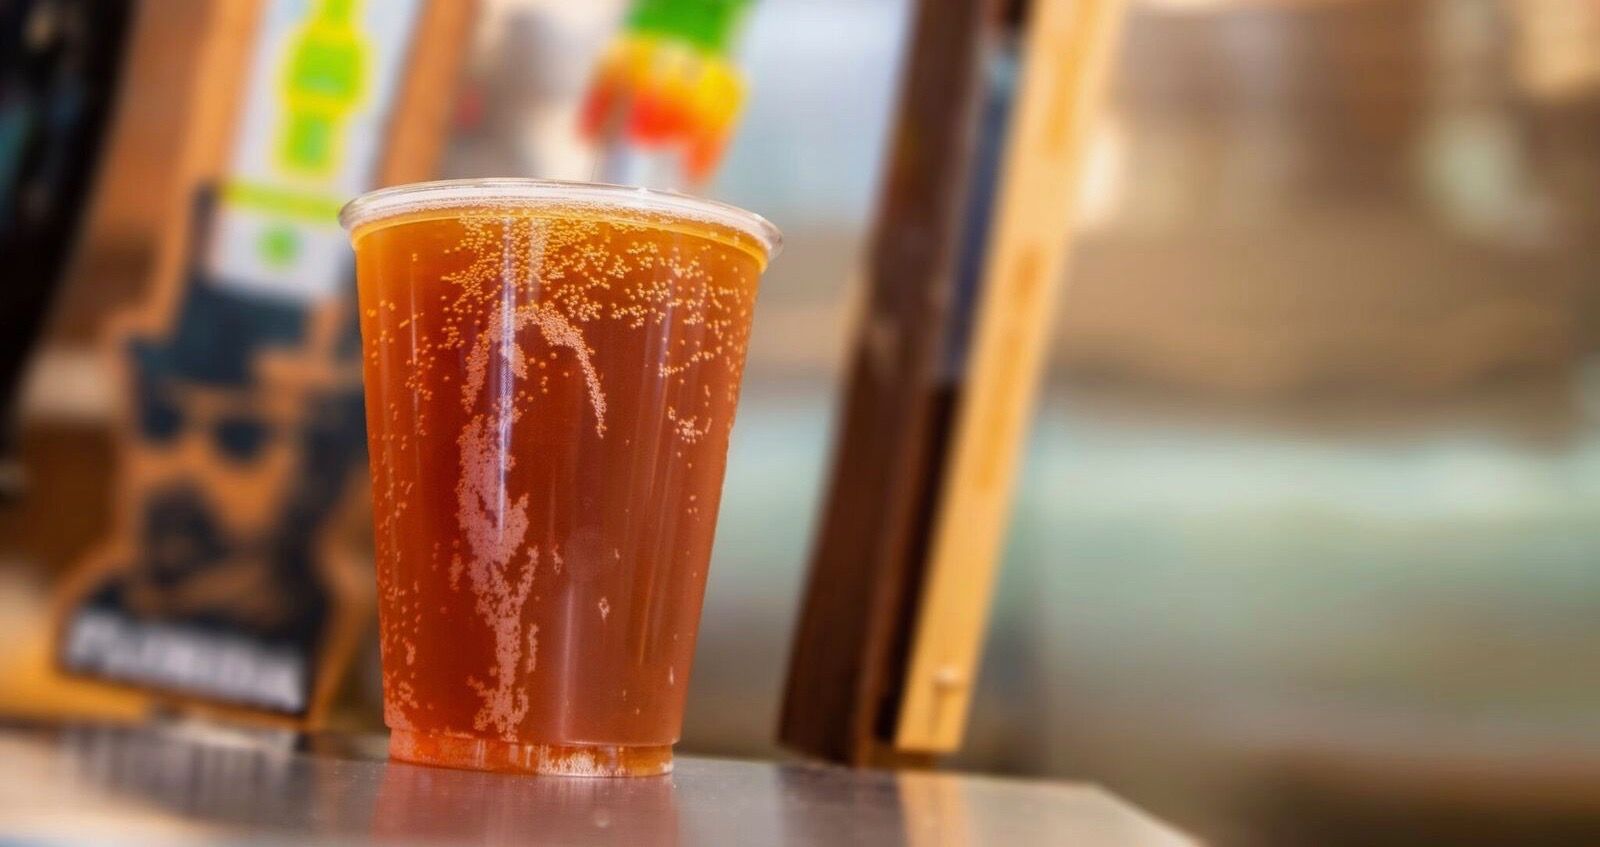 SeaWorld agora oferece cerveja gratis